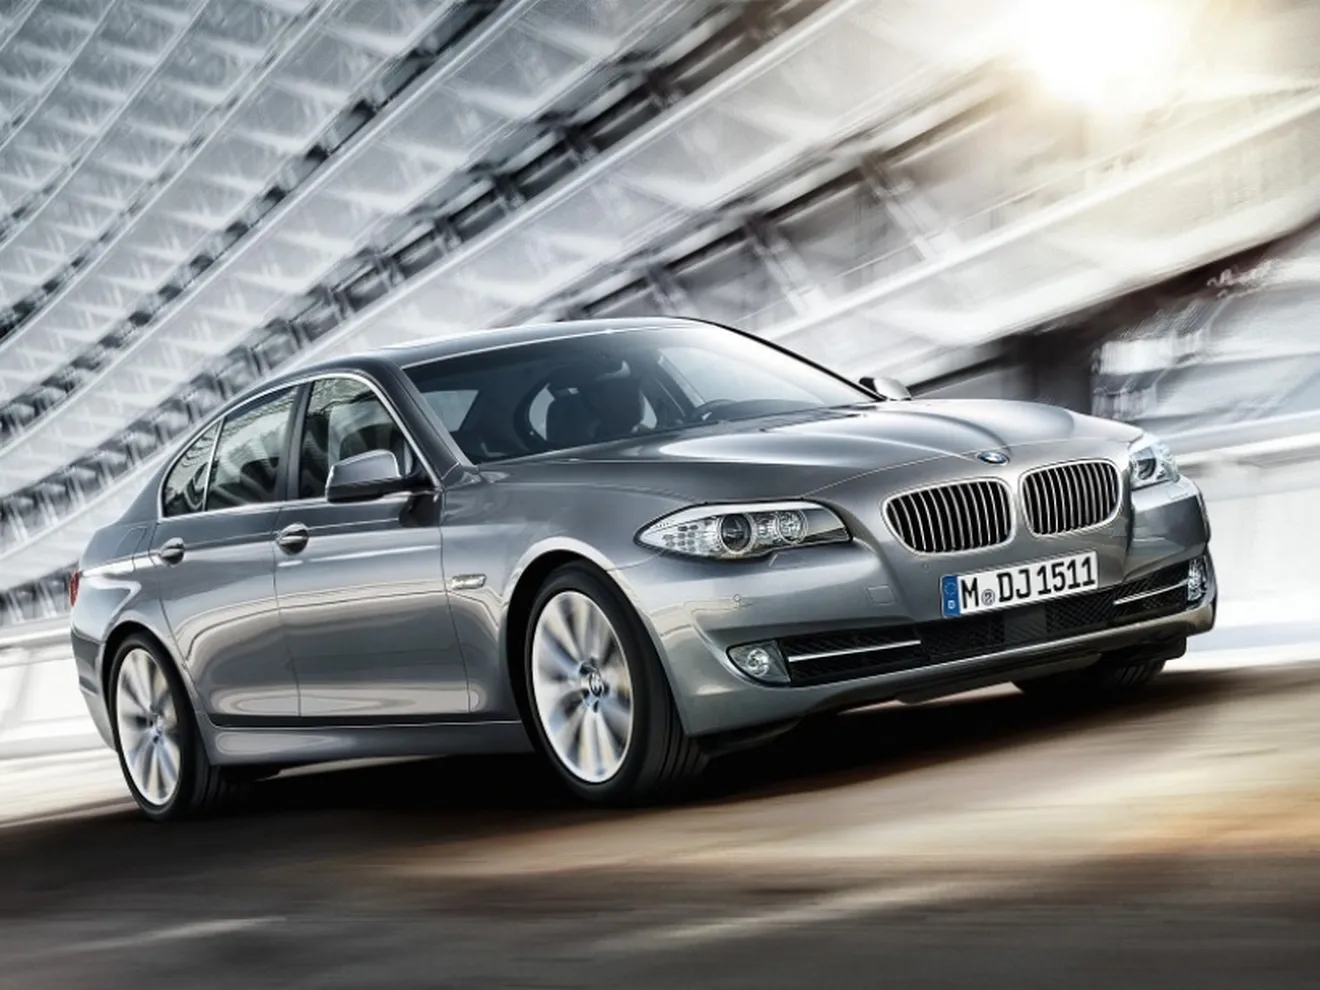 Las ventas del Grupo BMW alcanzan un récord histórico en junio